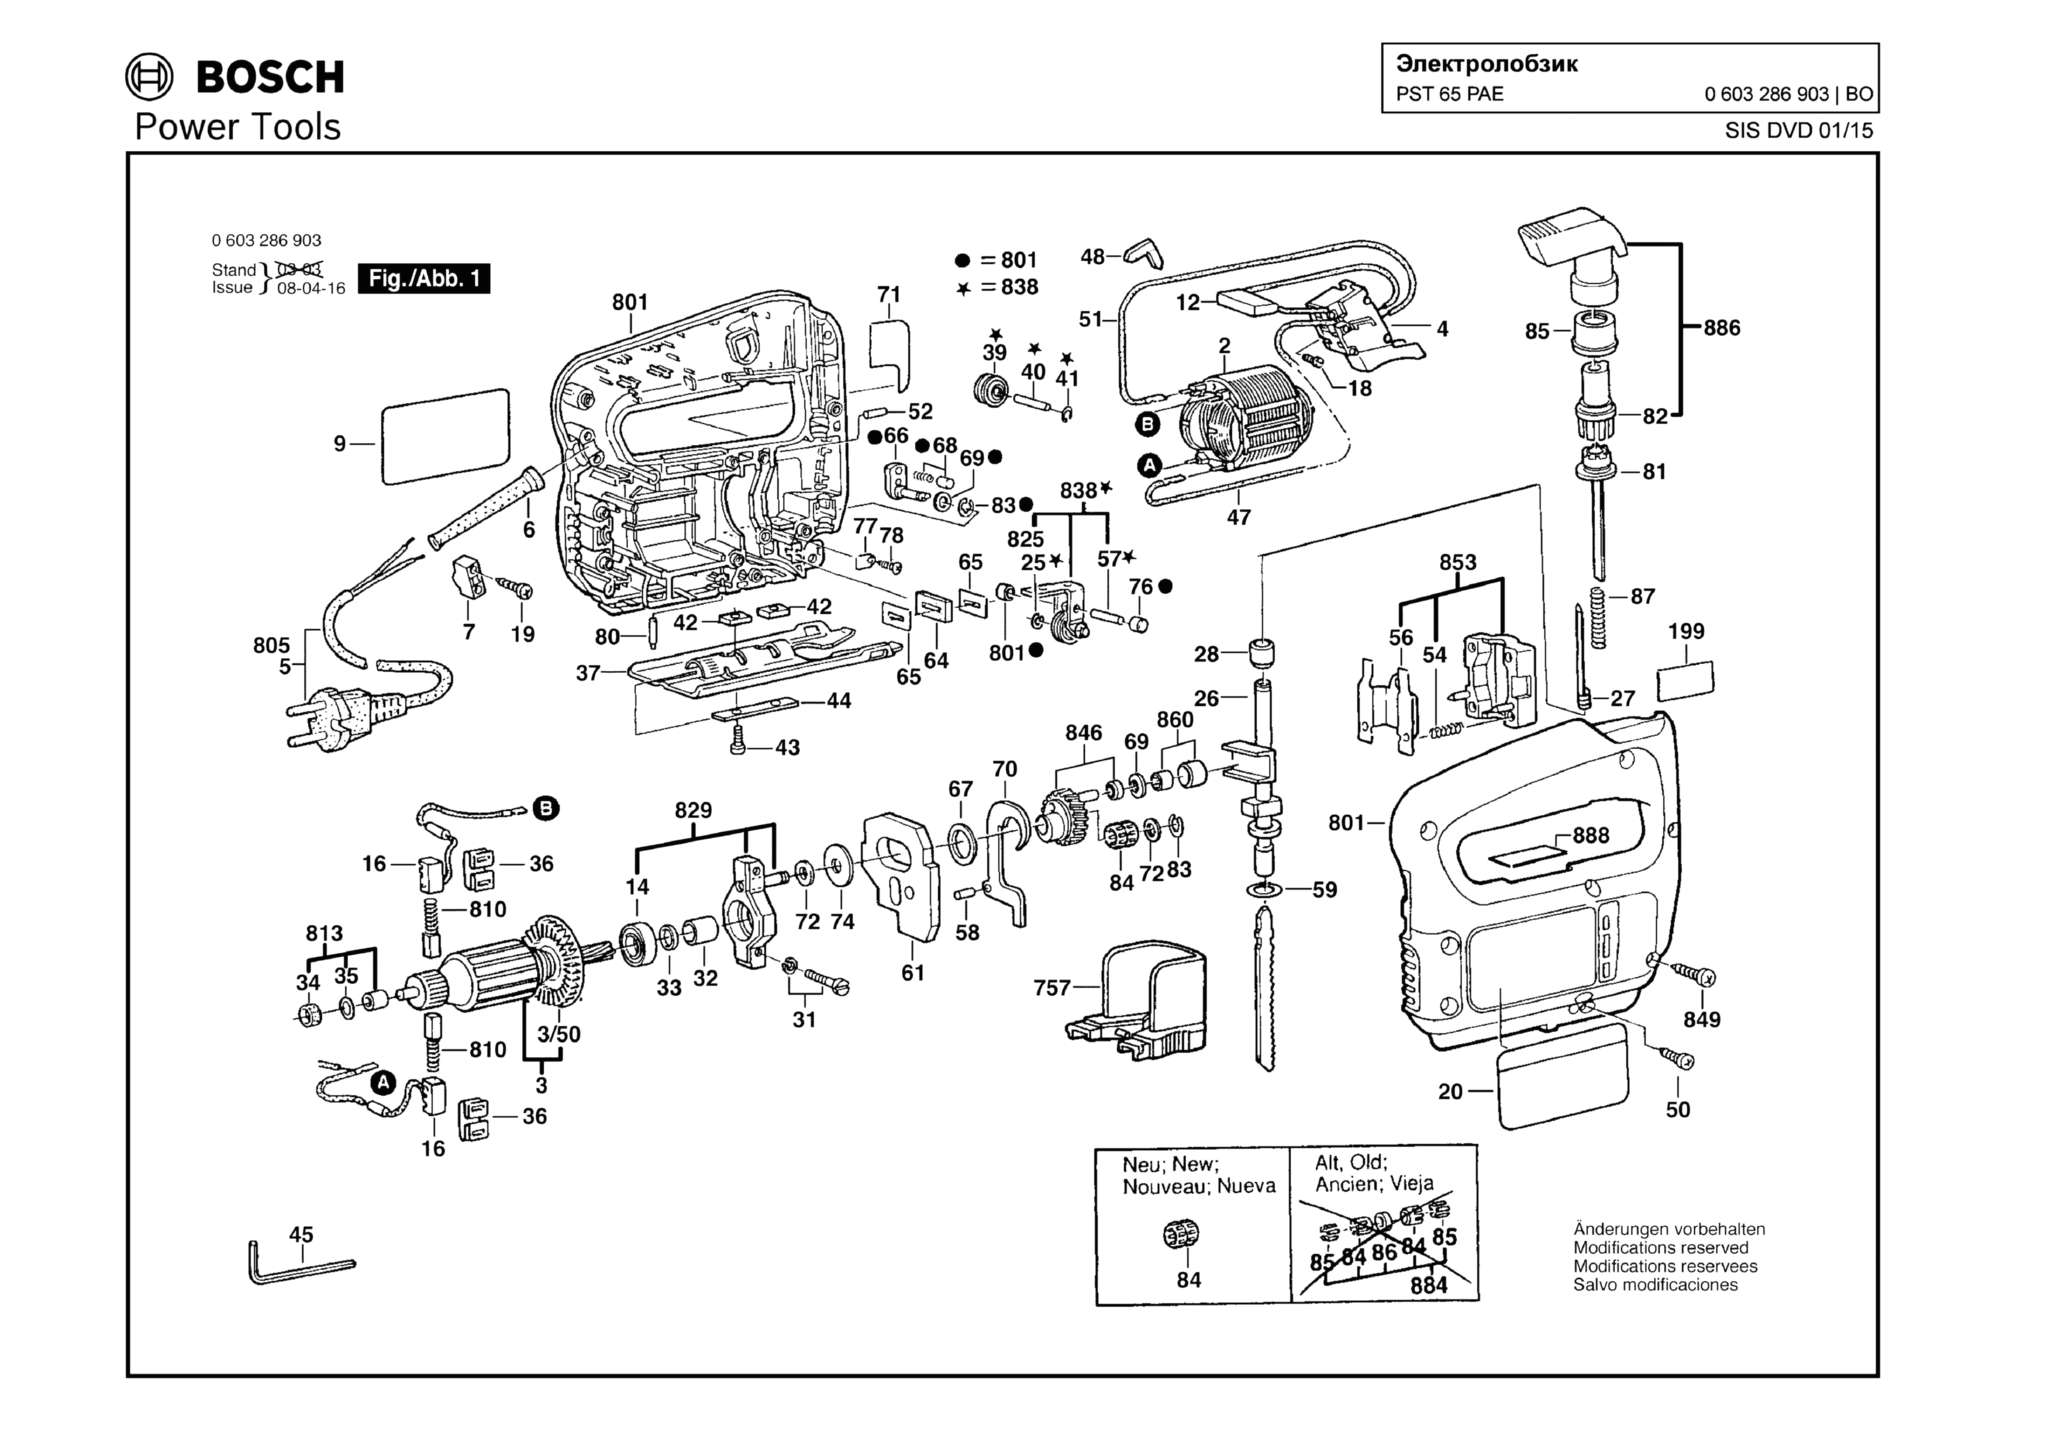 Запчасти, схема и деталировка Bosch PST 65 PAE (ТИП 0603286903)